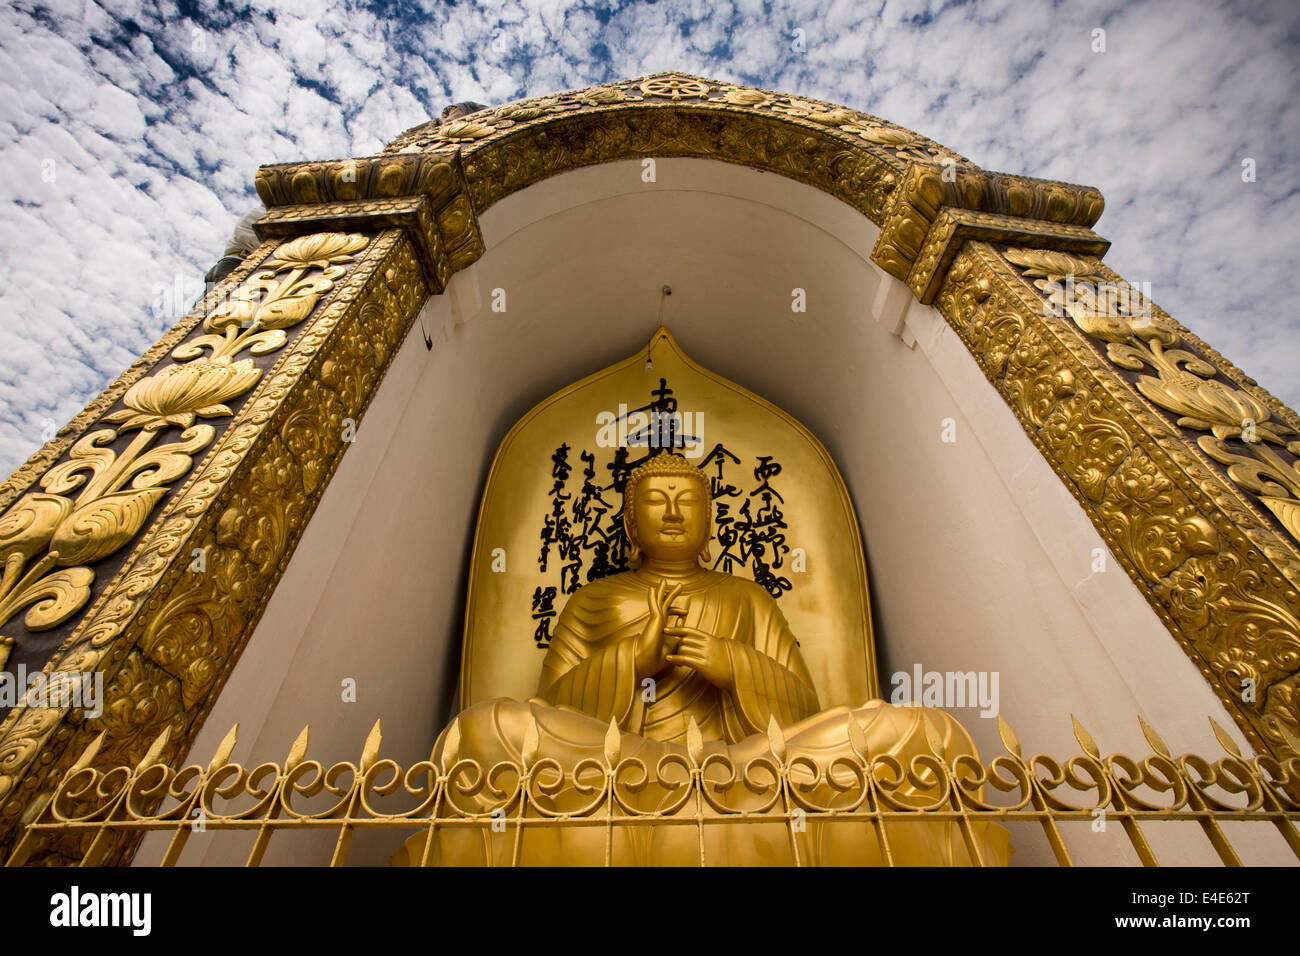 Nepal, Pokhara, Ananada Hill, Shanti Stupa, World Peace Pagoda, golden Buddha statue Stock Photo